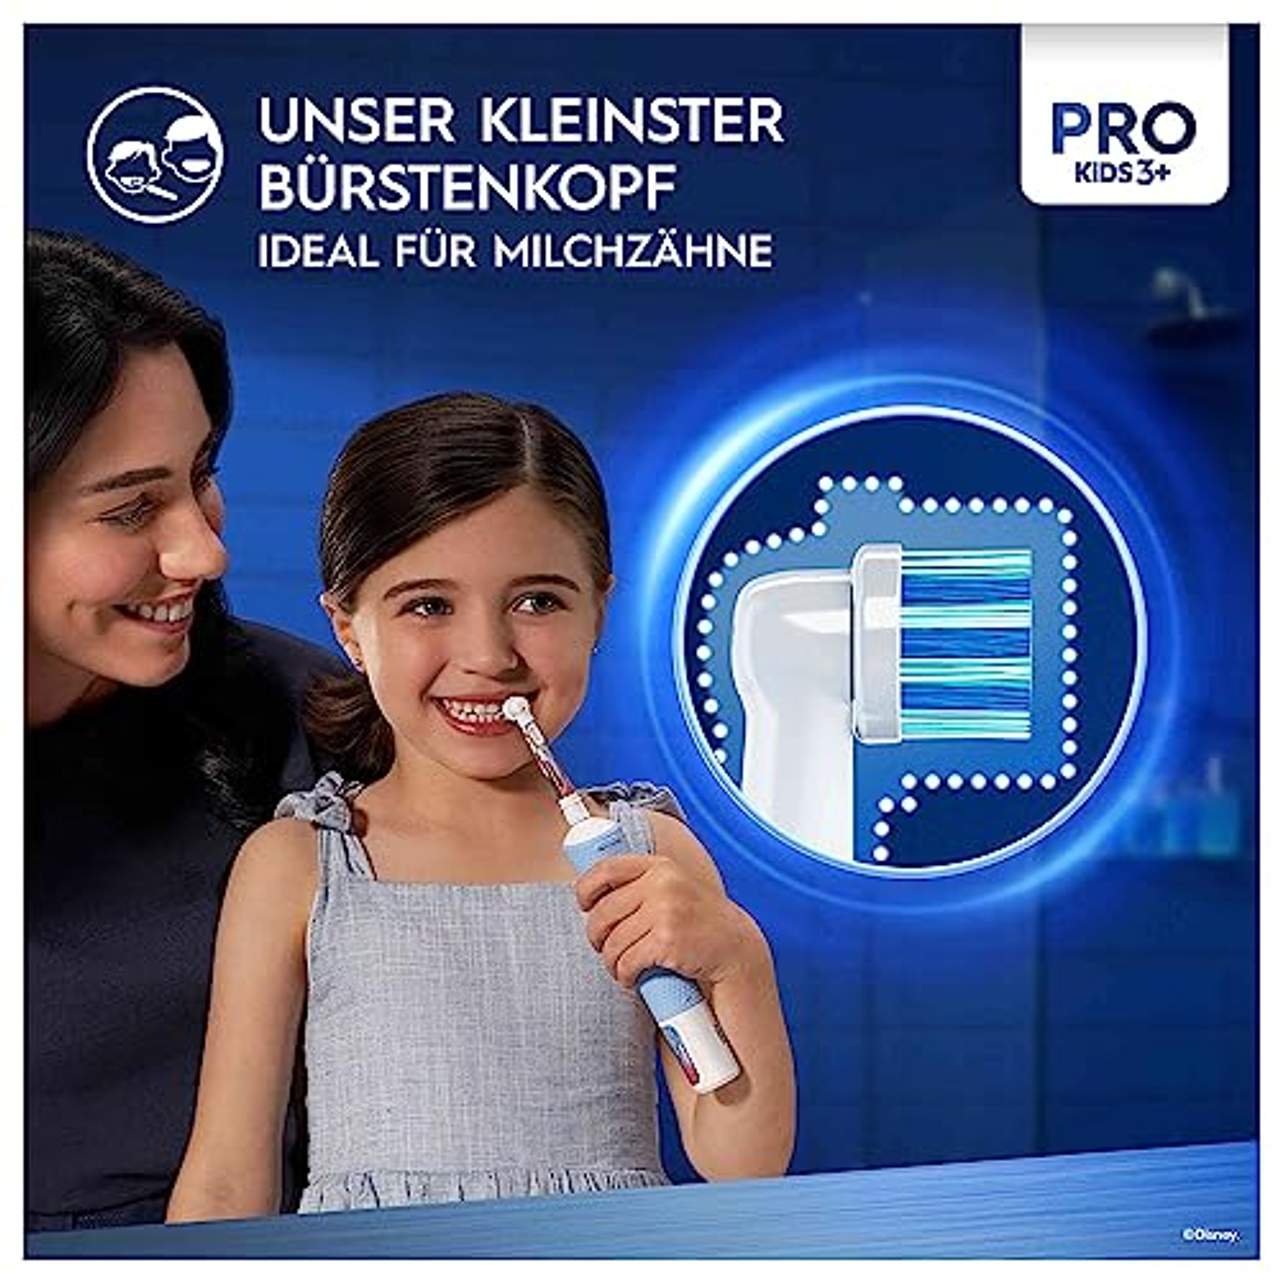 Oral-B Pro Kids Frozen Elektrische Zahnbürste